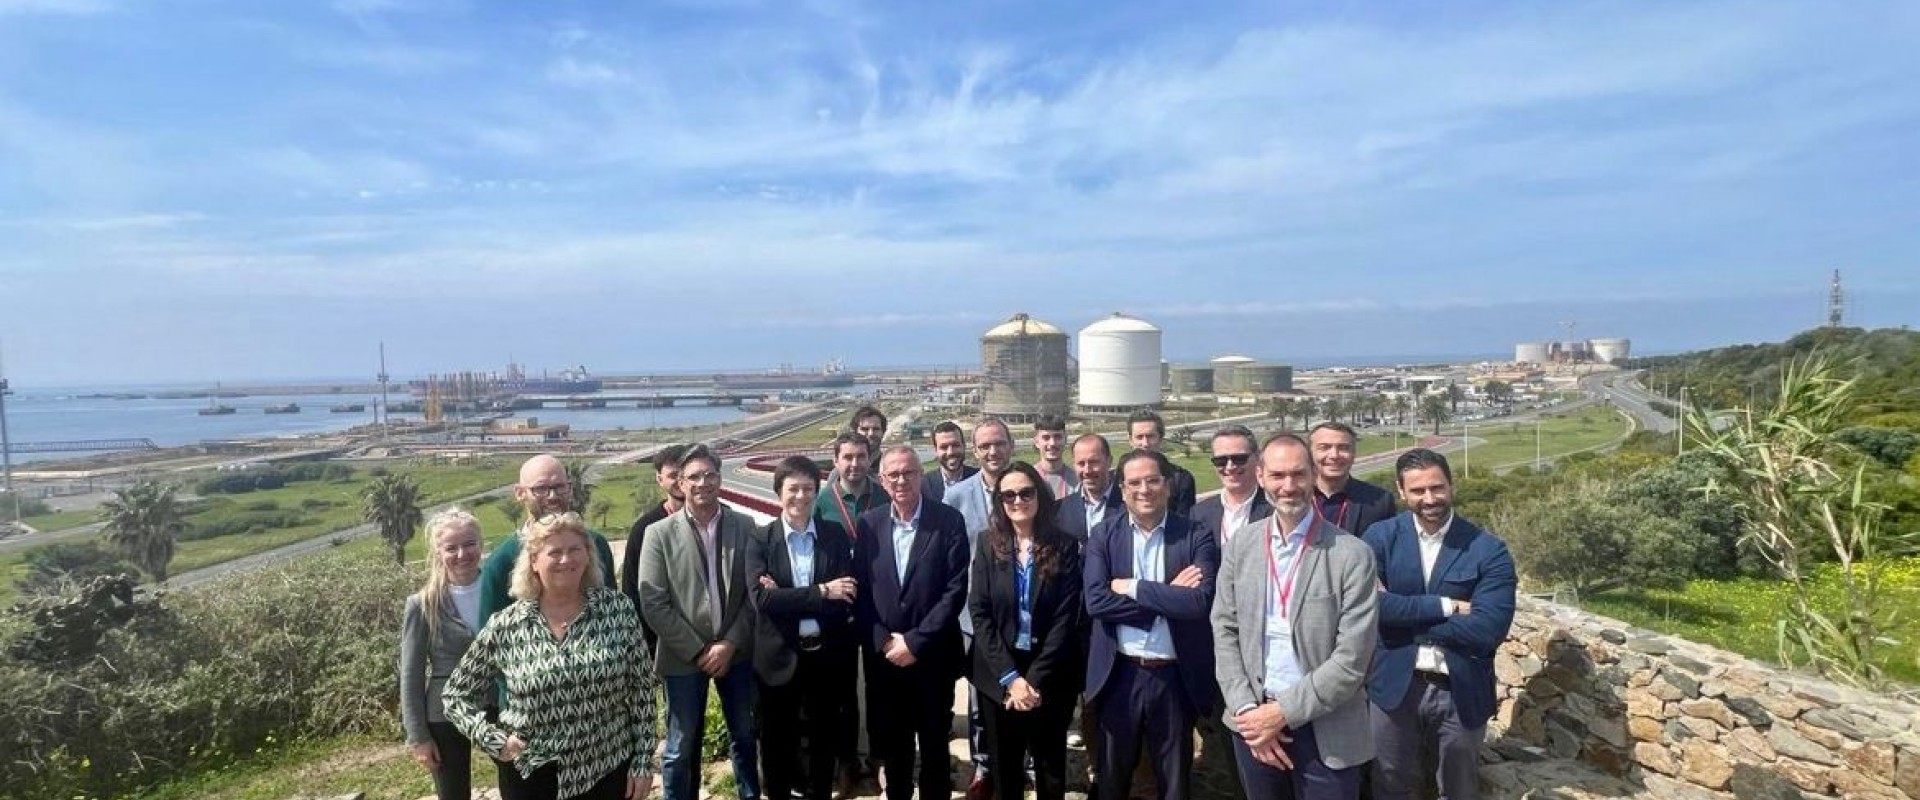 Nantes Saint-Nazaire Port acompaña a una delegación regional a Portugal y España